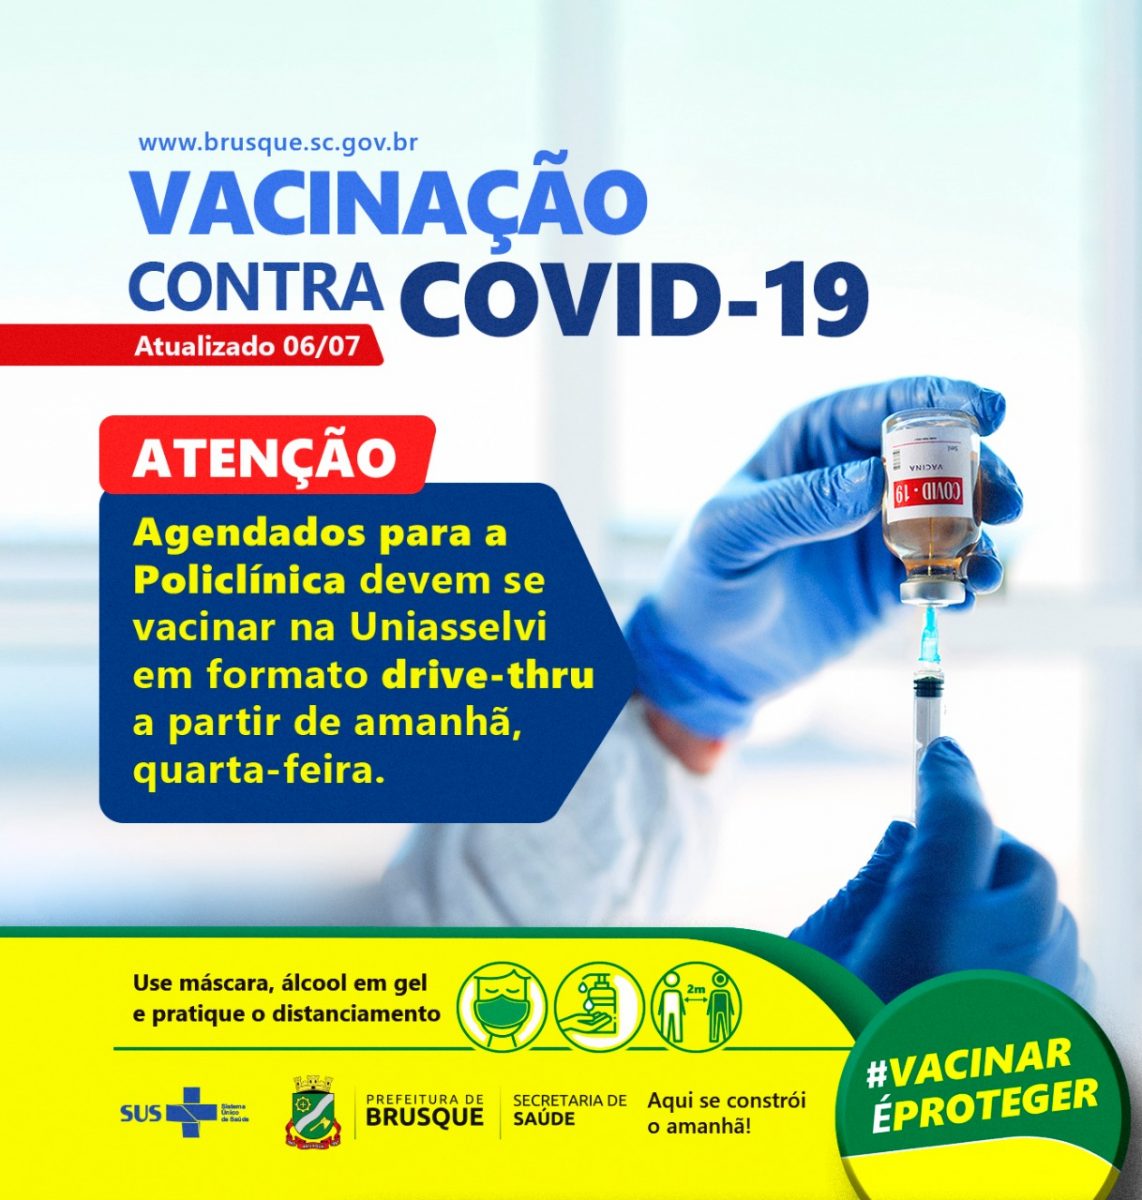 Covid-19: Agendados para a Policlínica devem se vacinar na Uniasselvi em formato drive-thru a partir de amanhã, quarta-feira